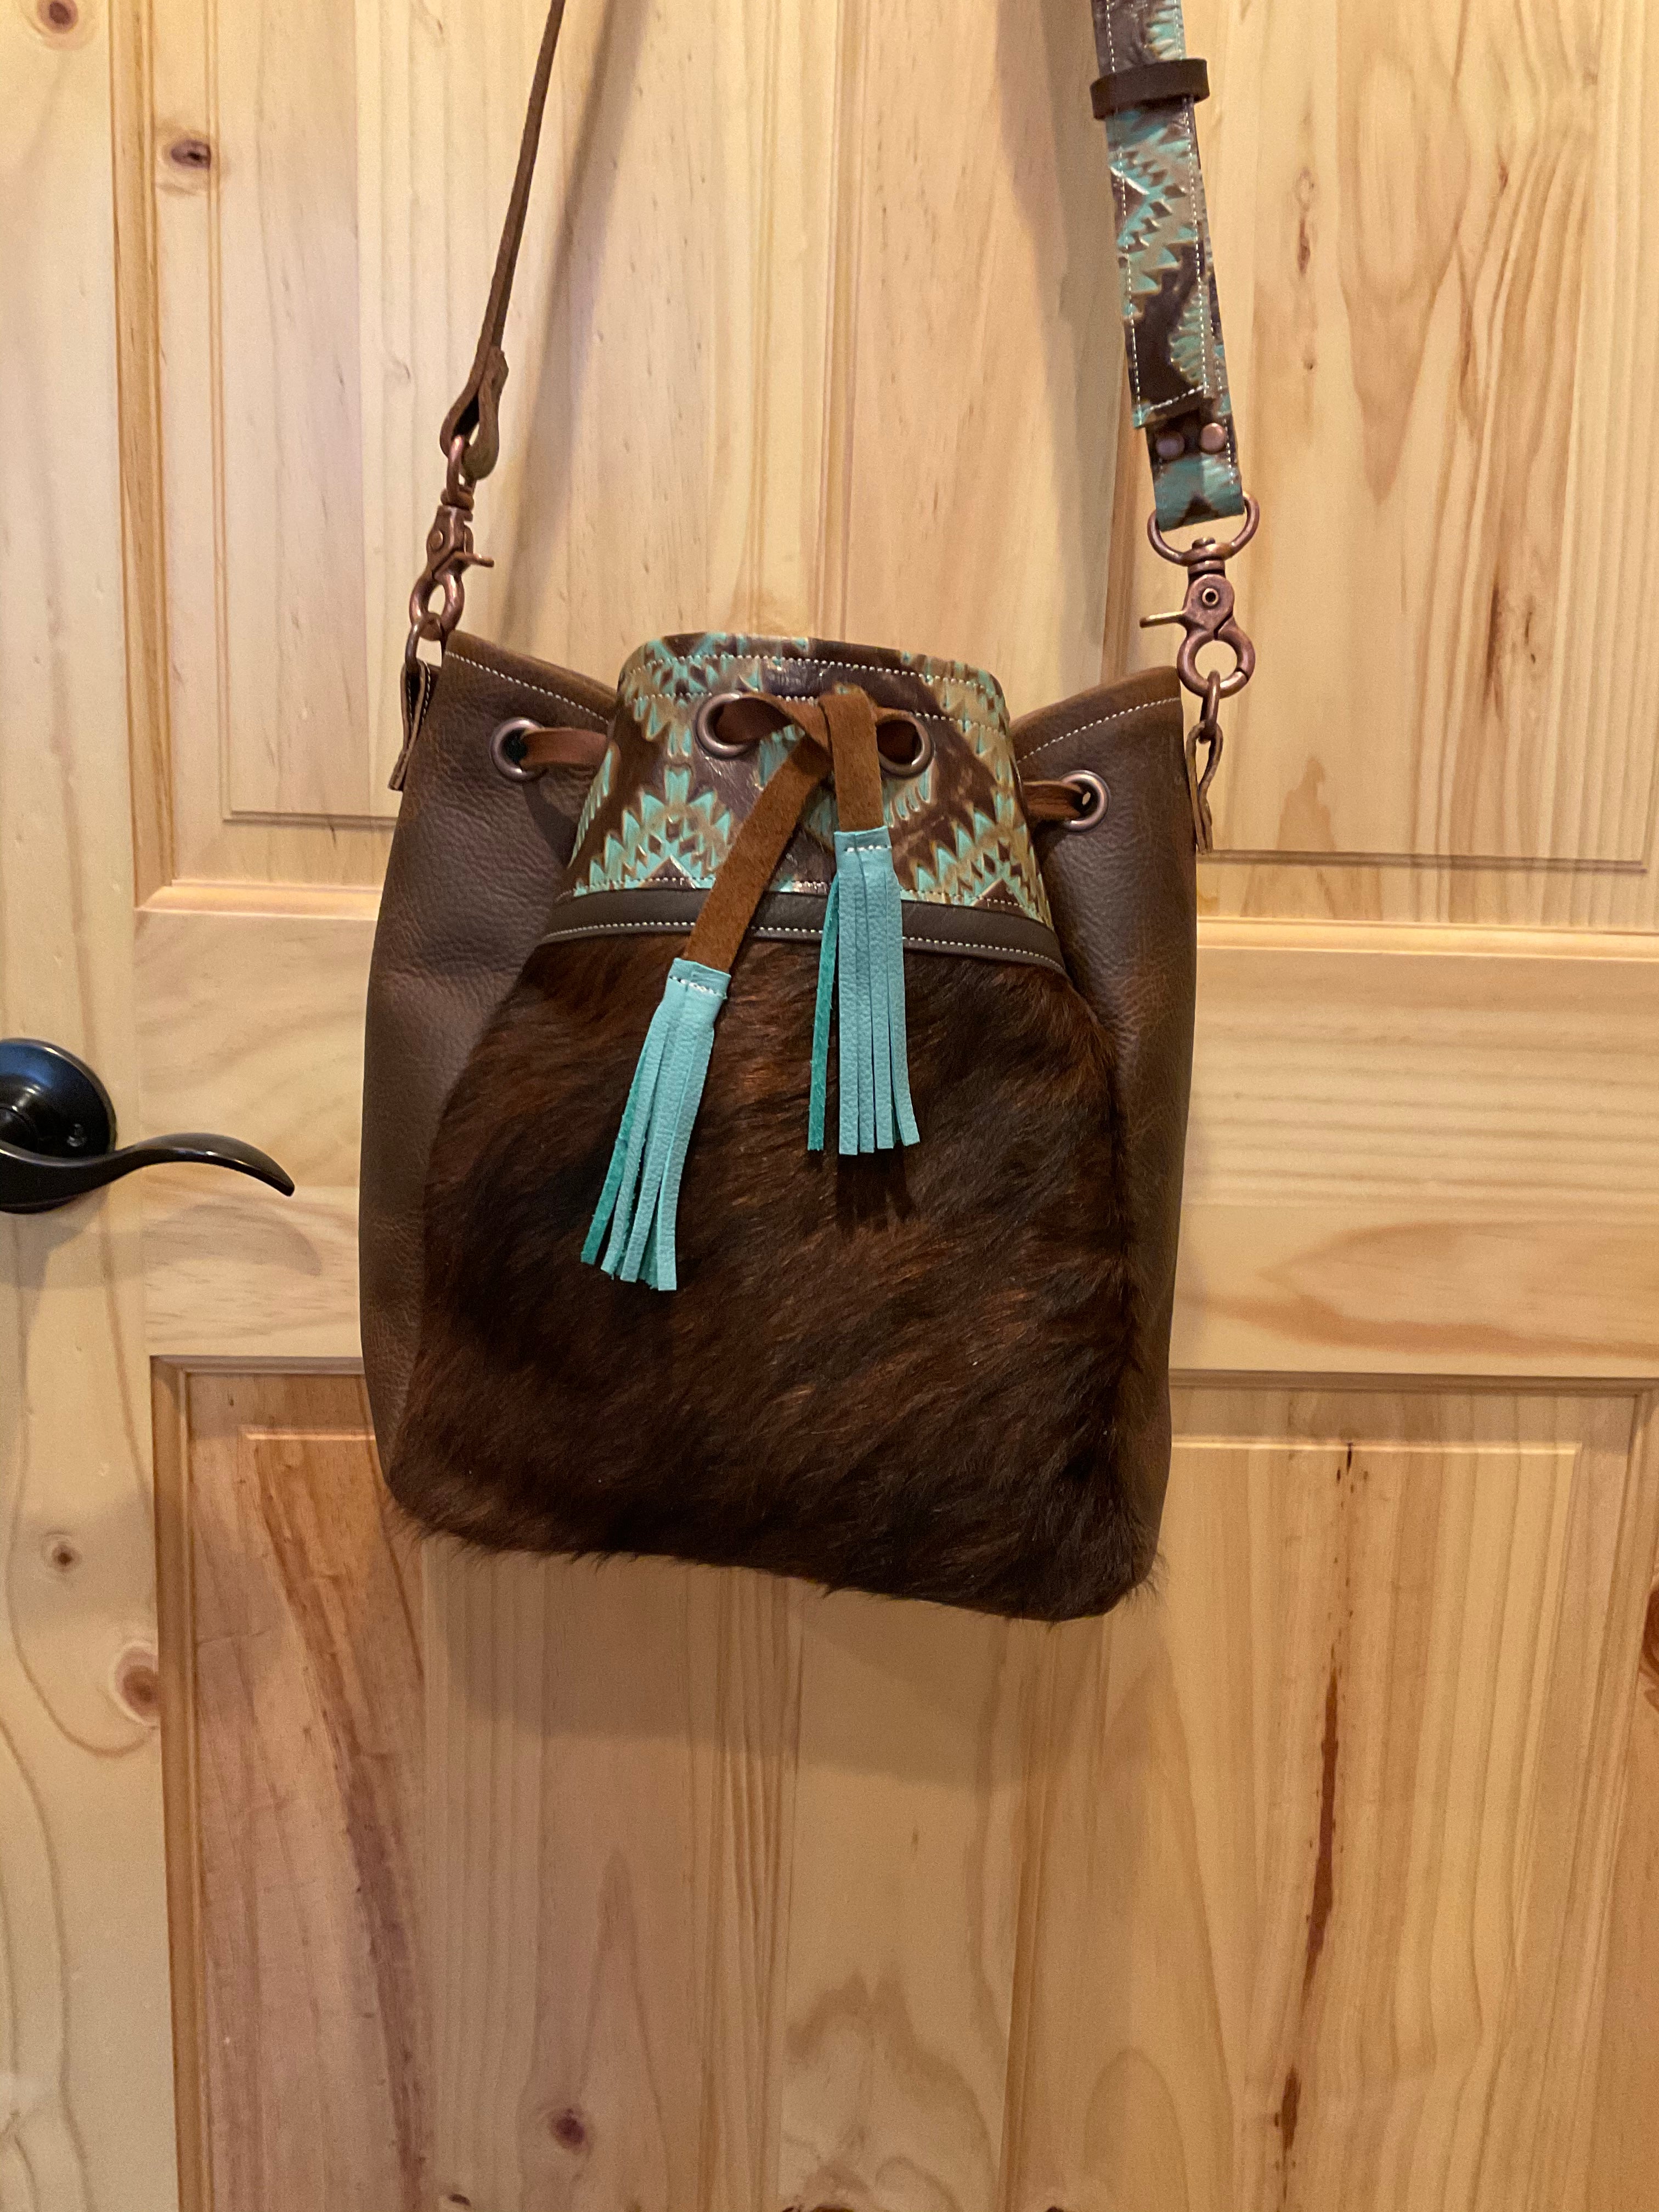 The “Deadwood” crossbody feed bucket style purse – Triple J